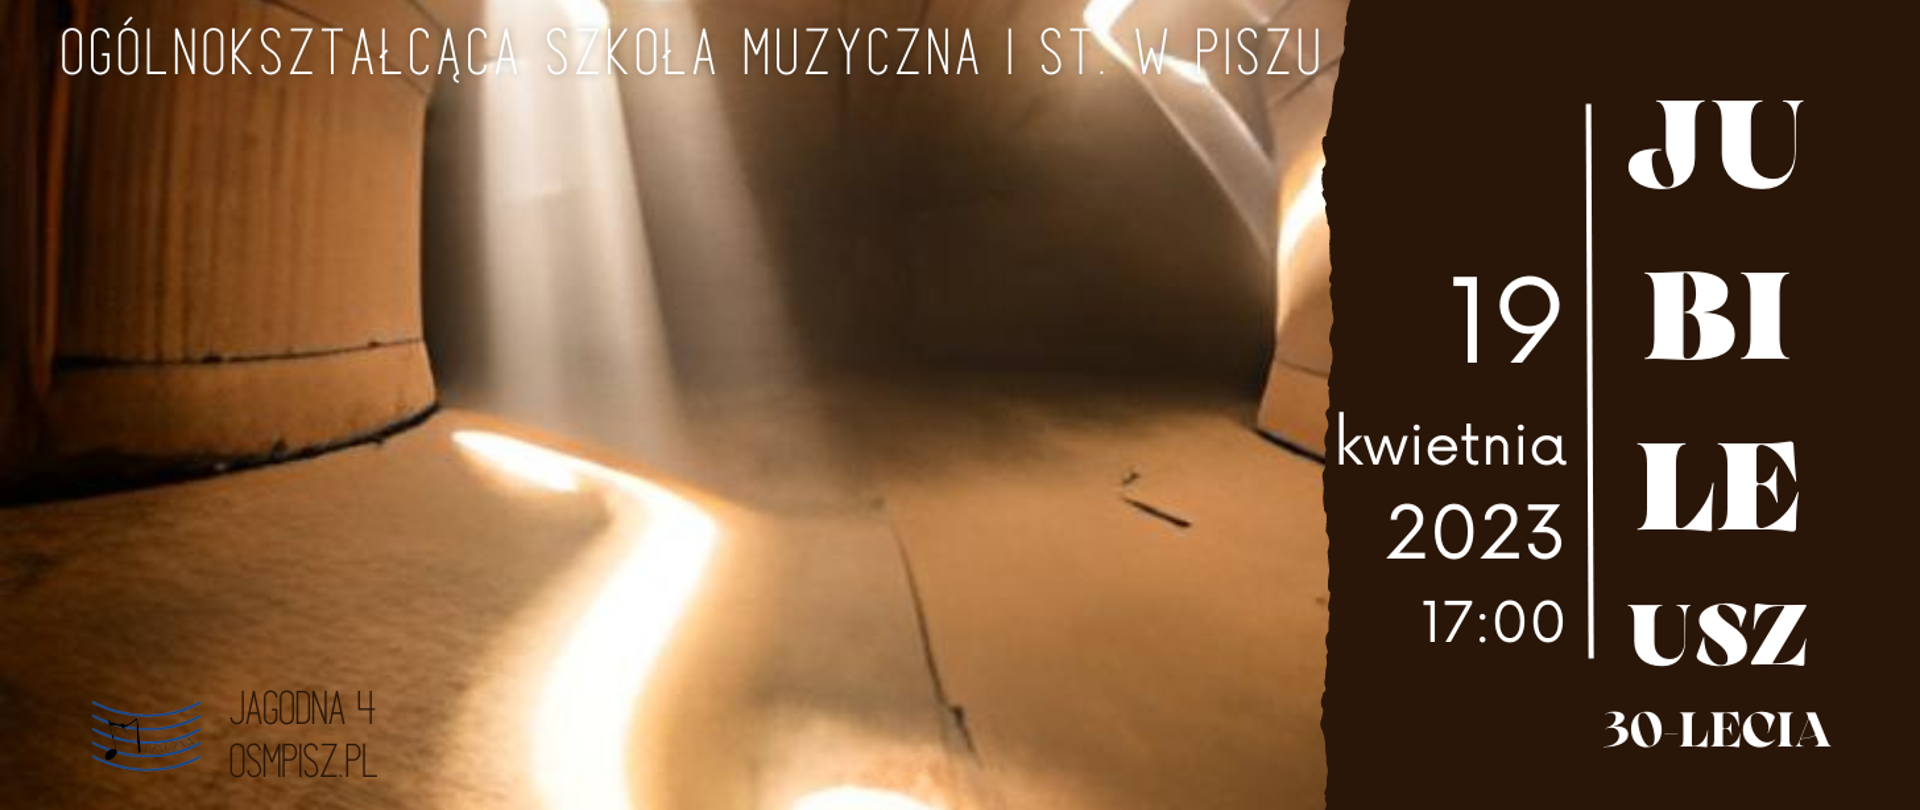 Zdjęcie przedstawia drewniane wnętrze skrzypiec, przez otwory prześwituje światło. Z boku informacja o koncercie szkolnym z okazji Jubileuszu 30-lecia OSM I st. w Piszu 19.04.2023r. godz. 17.00.